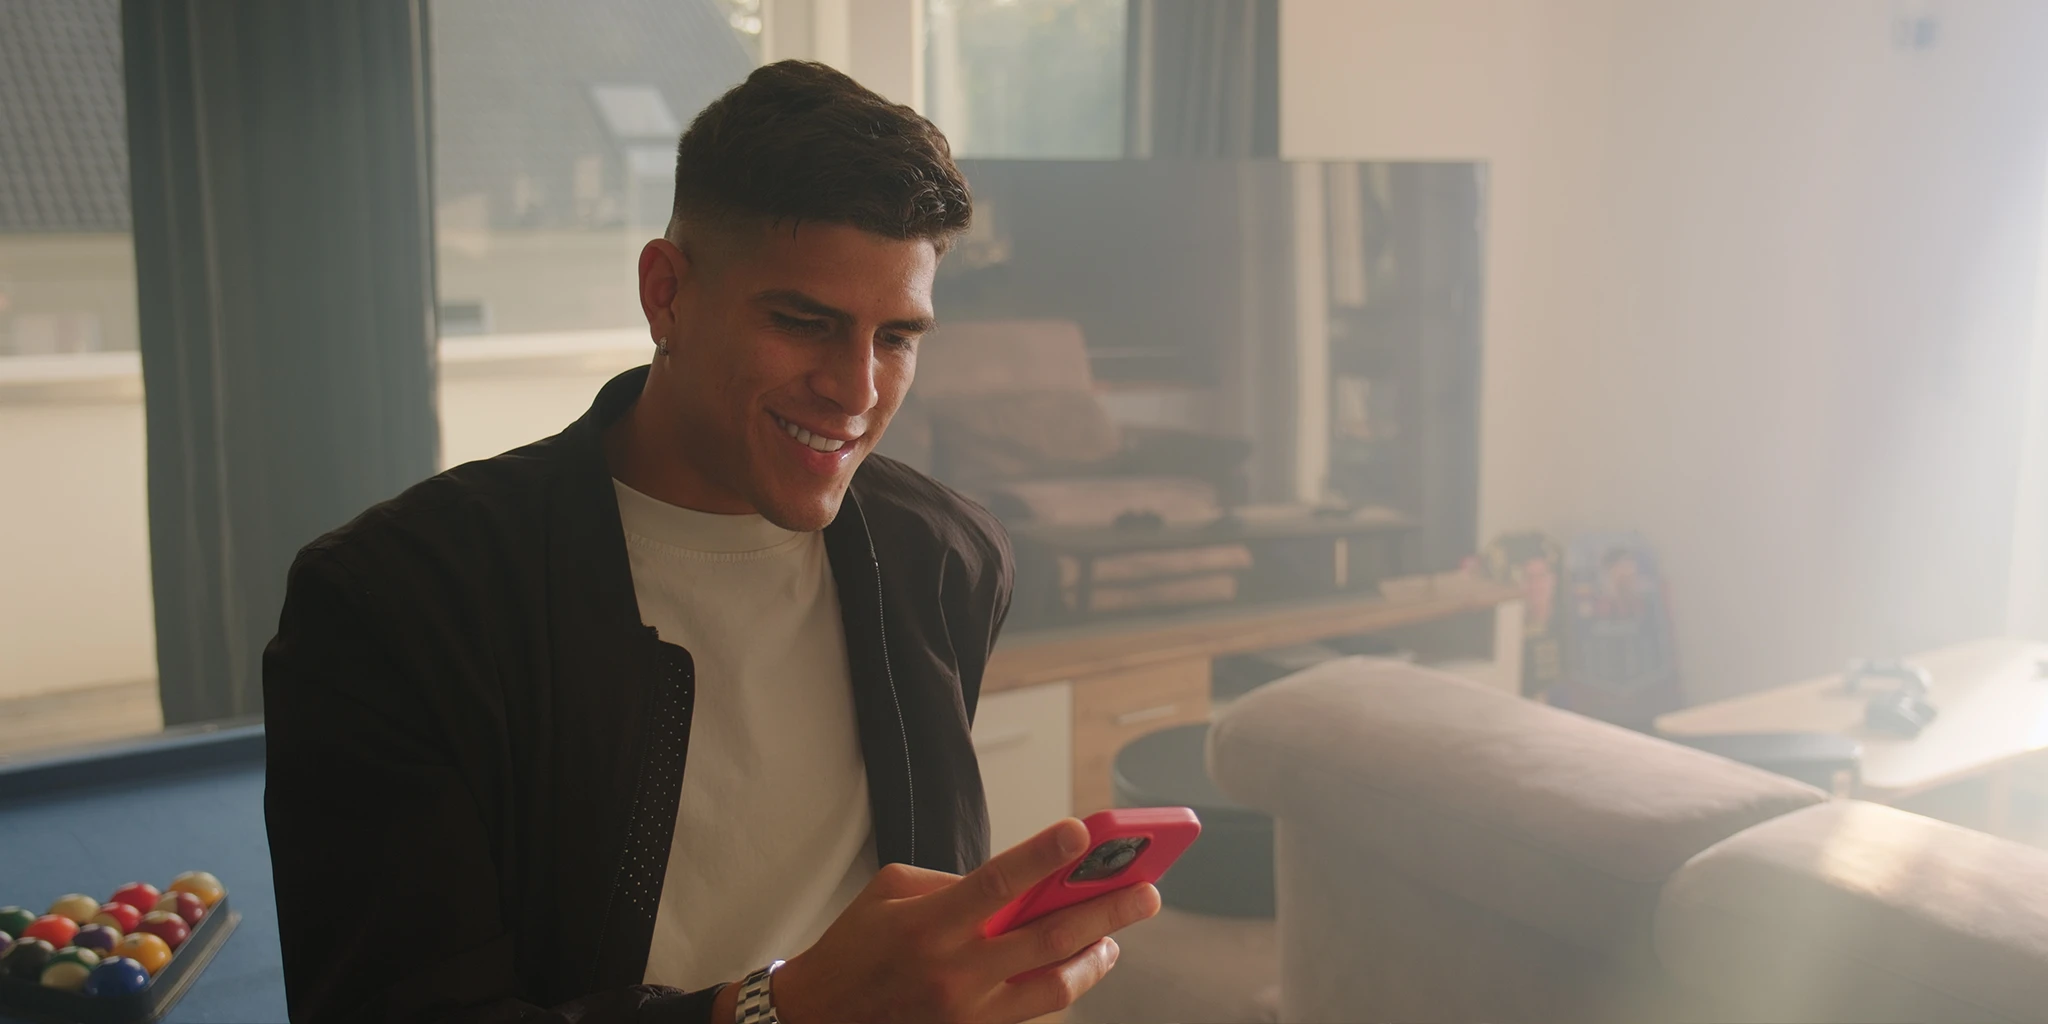 Fußballprofi Piero (Piero Hincapié) sitzt in seiner Villa auf einem Billiardtisch und ließt eine Textnachricht auf seinem Handy. Er trägt eine schlichte schwarze Jacke und ein weißes Shirt. Tiefstehende Sonne flutet den Raum. Im Hintergrund ist ein ausgeschalteter Fernseher zu sehen.